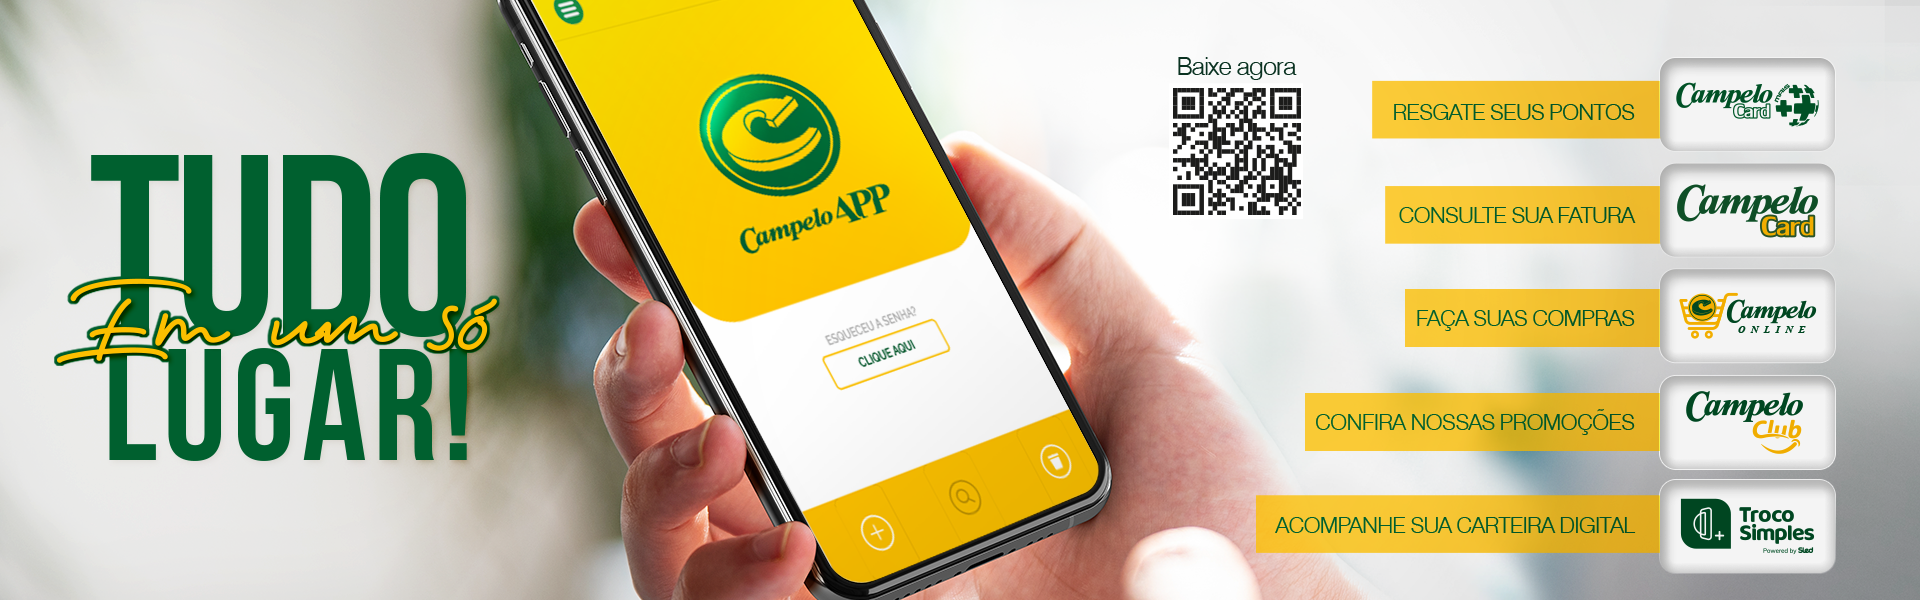 Campelo App 